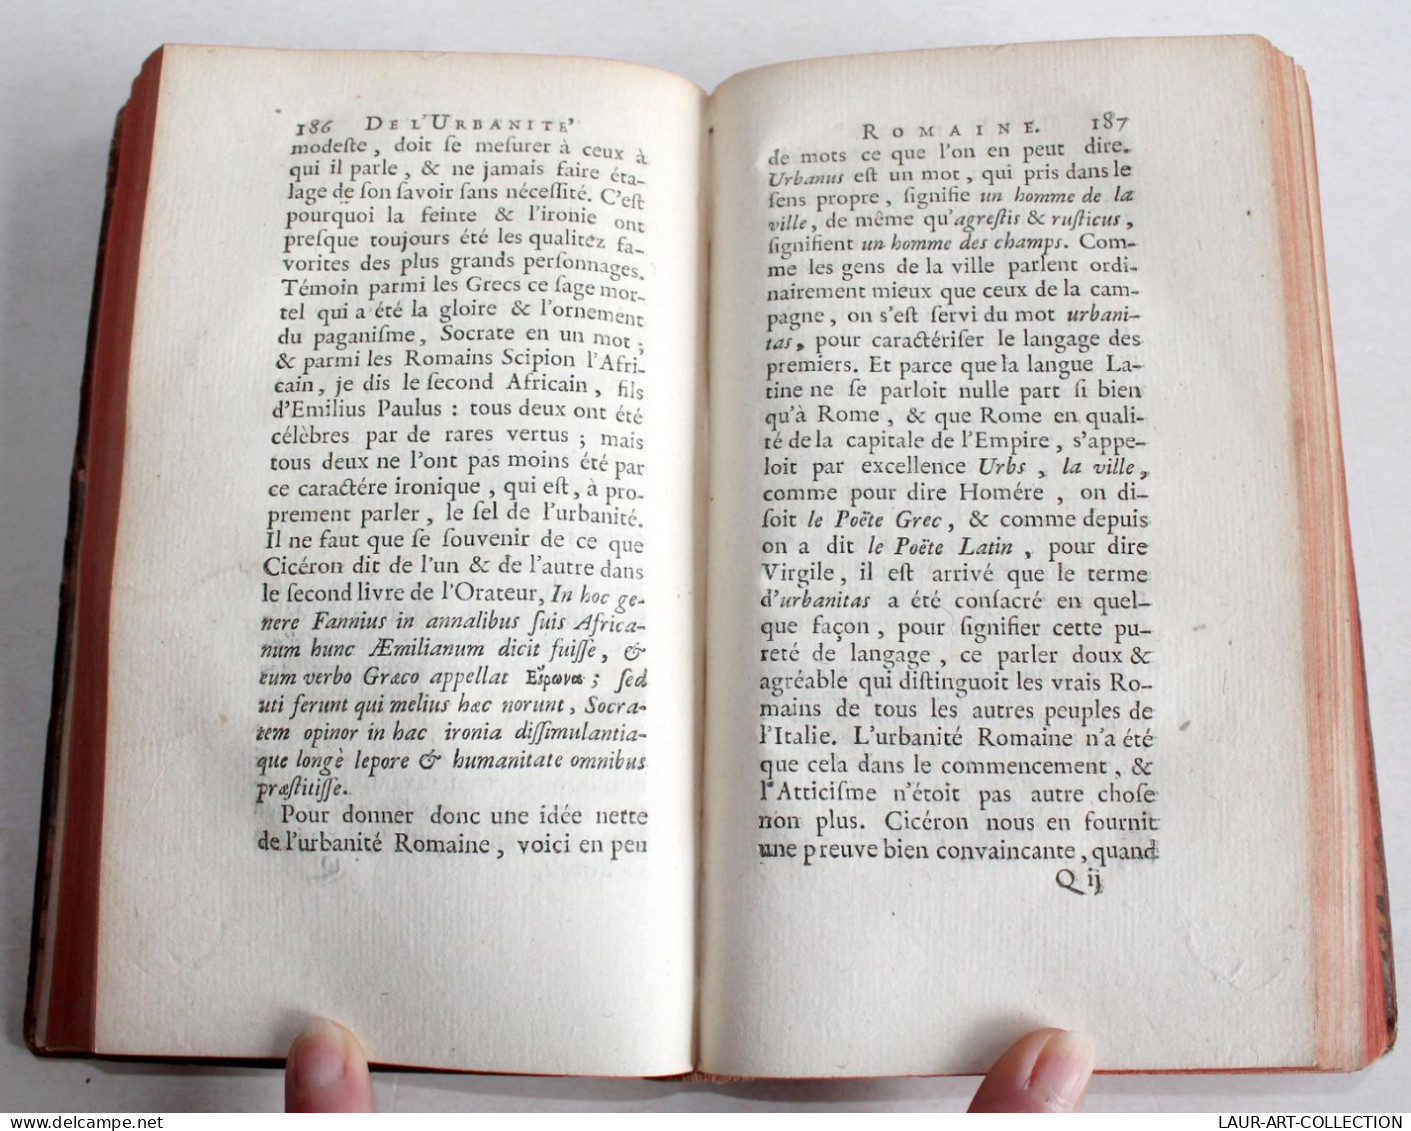 OEUVRES DIVERSES De L'ABBE GEDOYN, EDUCATION ENFANTS, PLAISIRS DE LA TABLE 1745, En TTBE ANCIEN LIVRE XVIIIe (2204.56) - 1701-1800